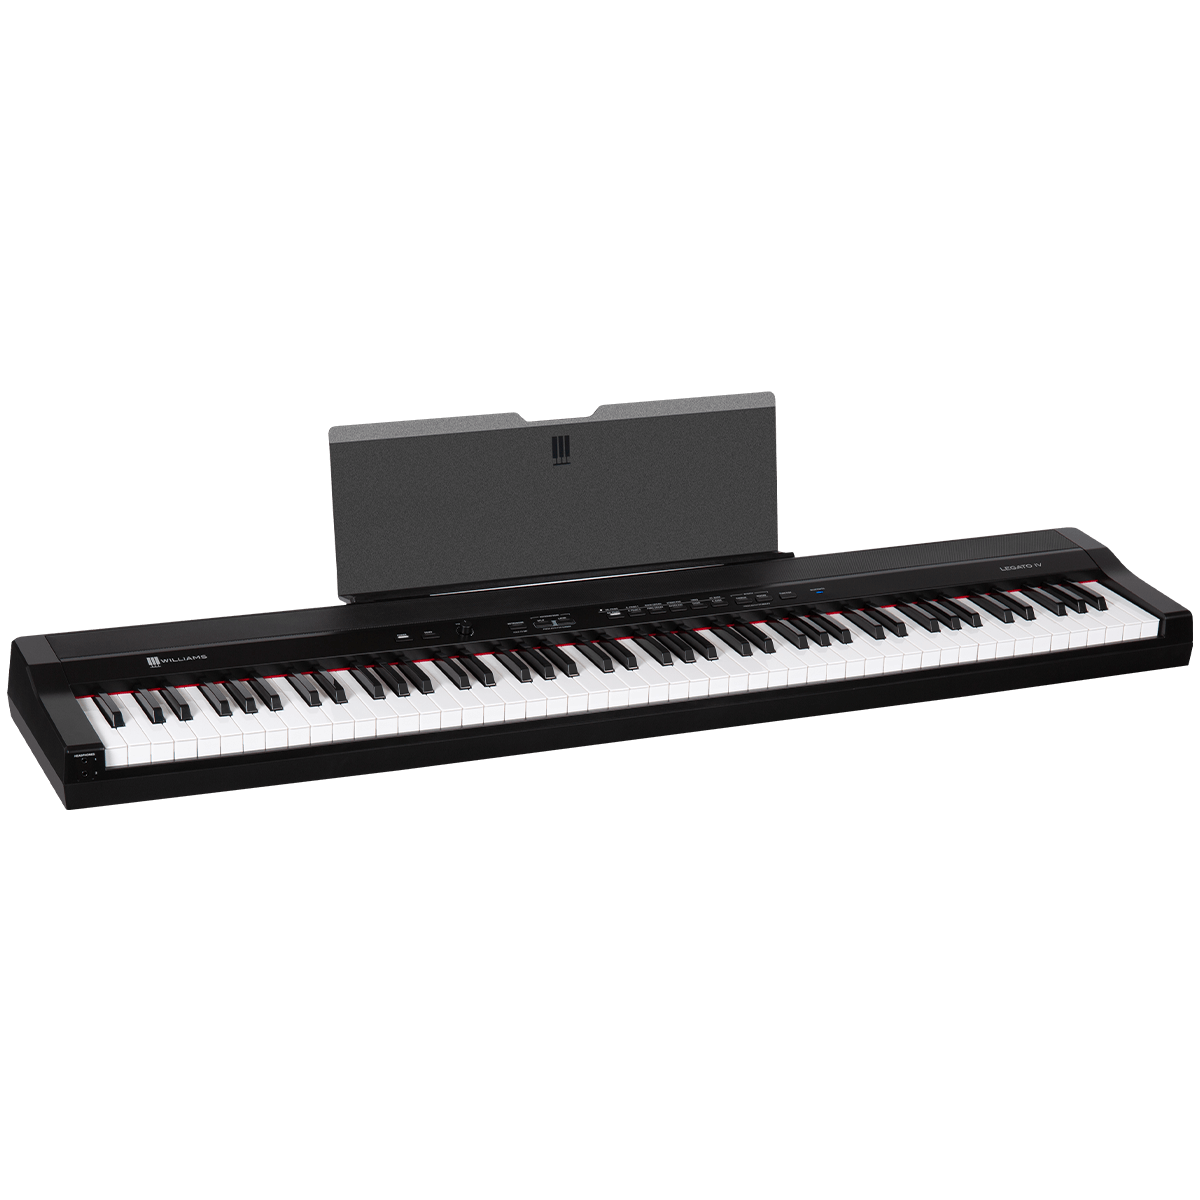 Williams Legato IV portable digital piano.